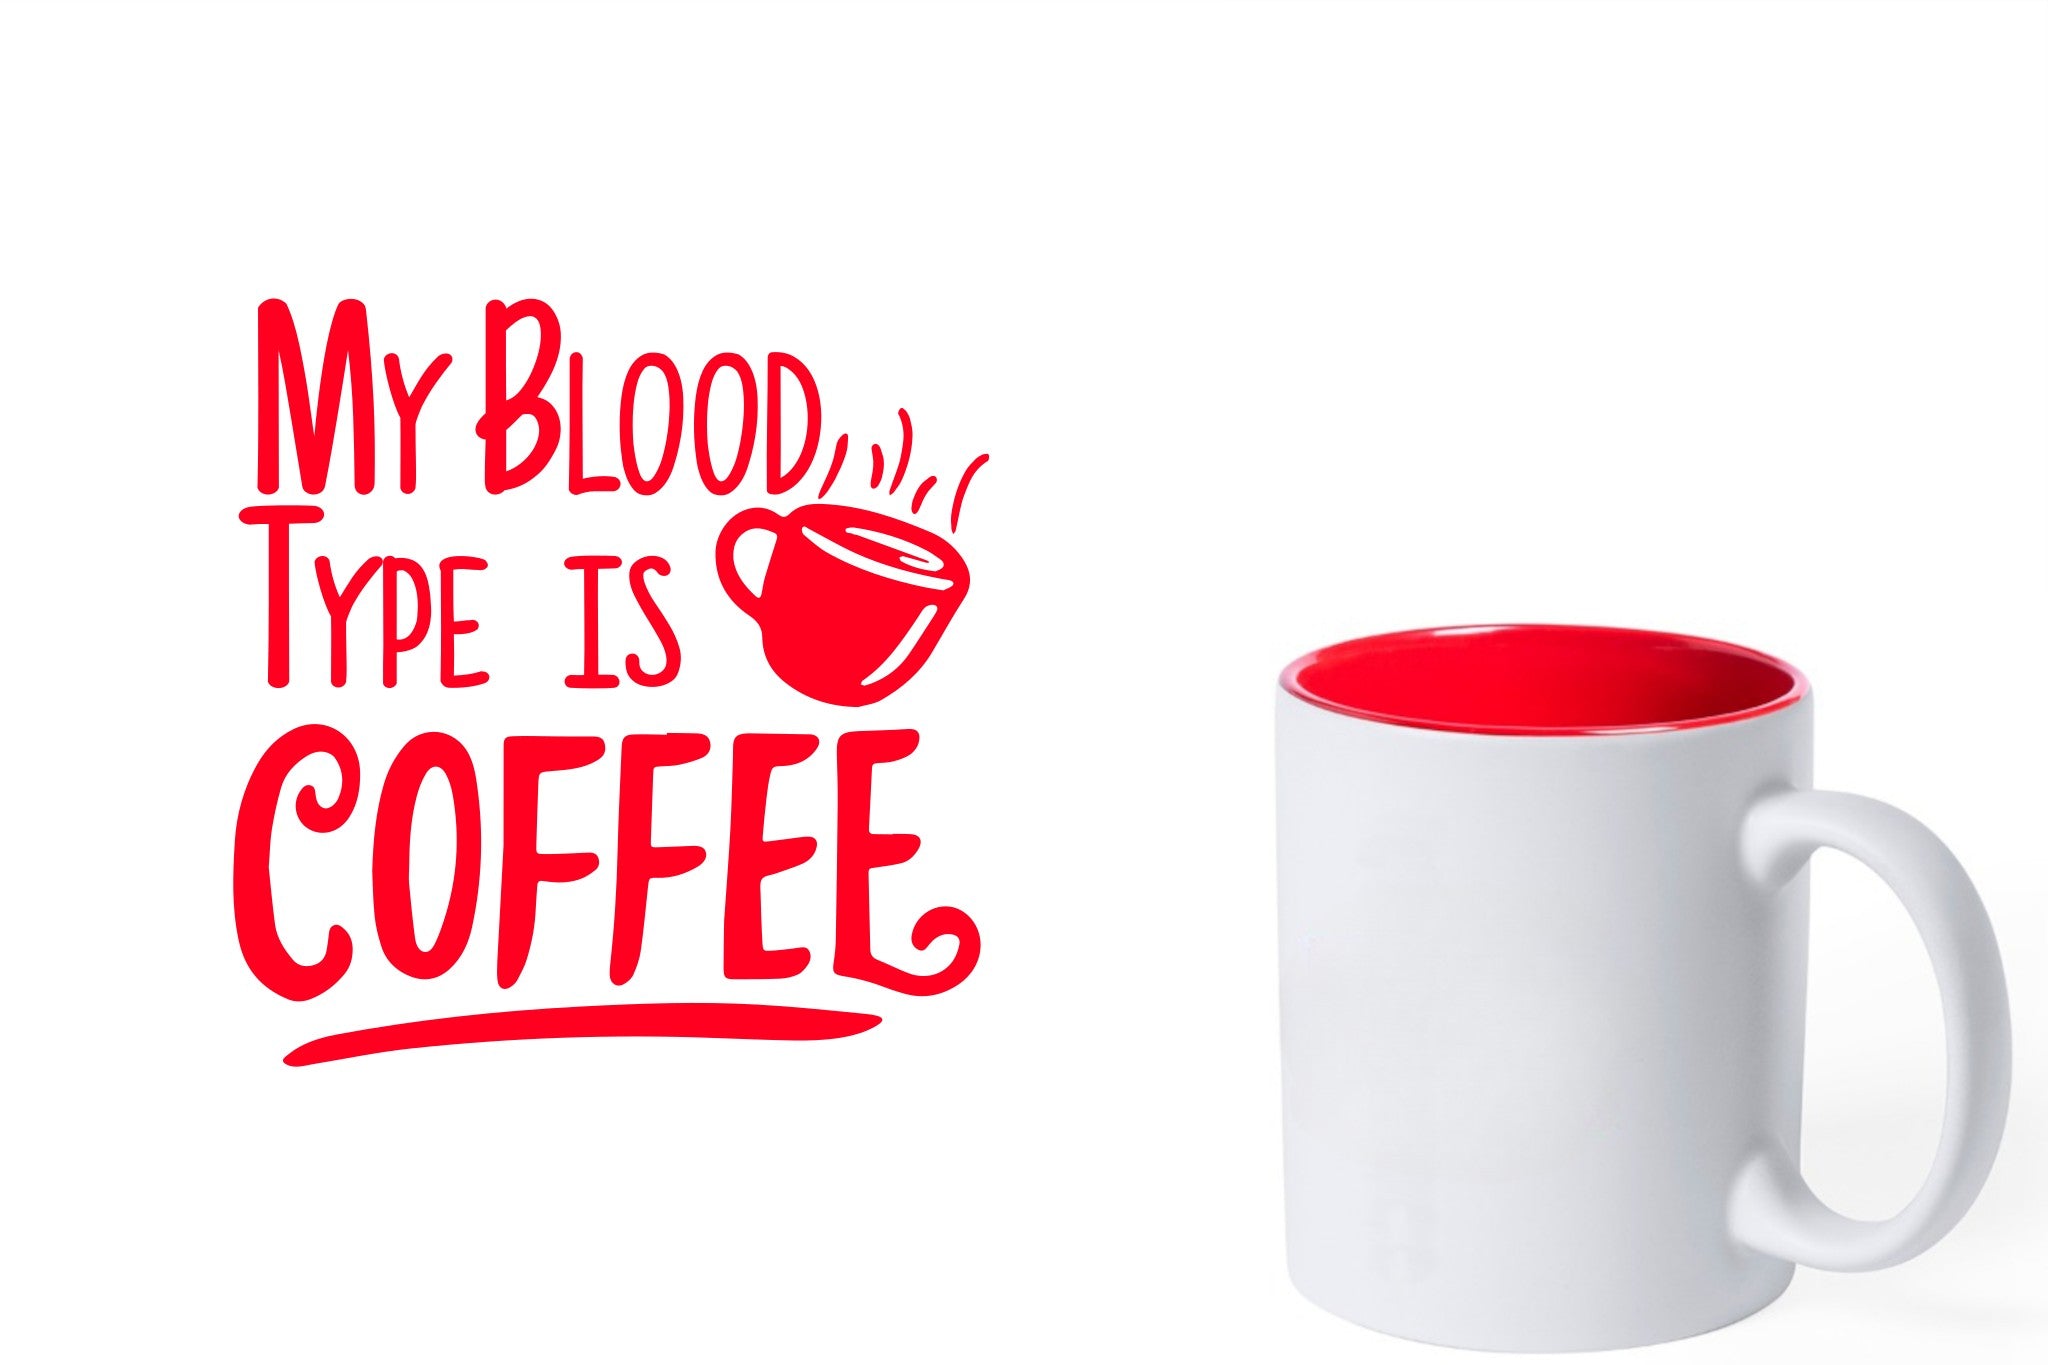 witte keramische mok met rode gravure  'My blood type is coffee'.